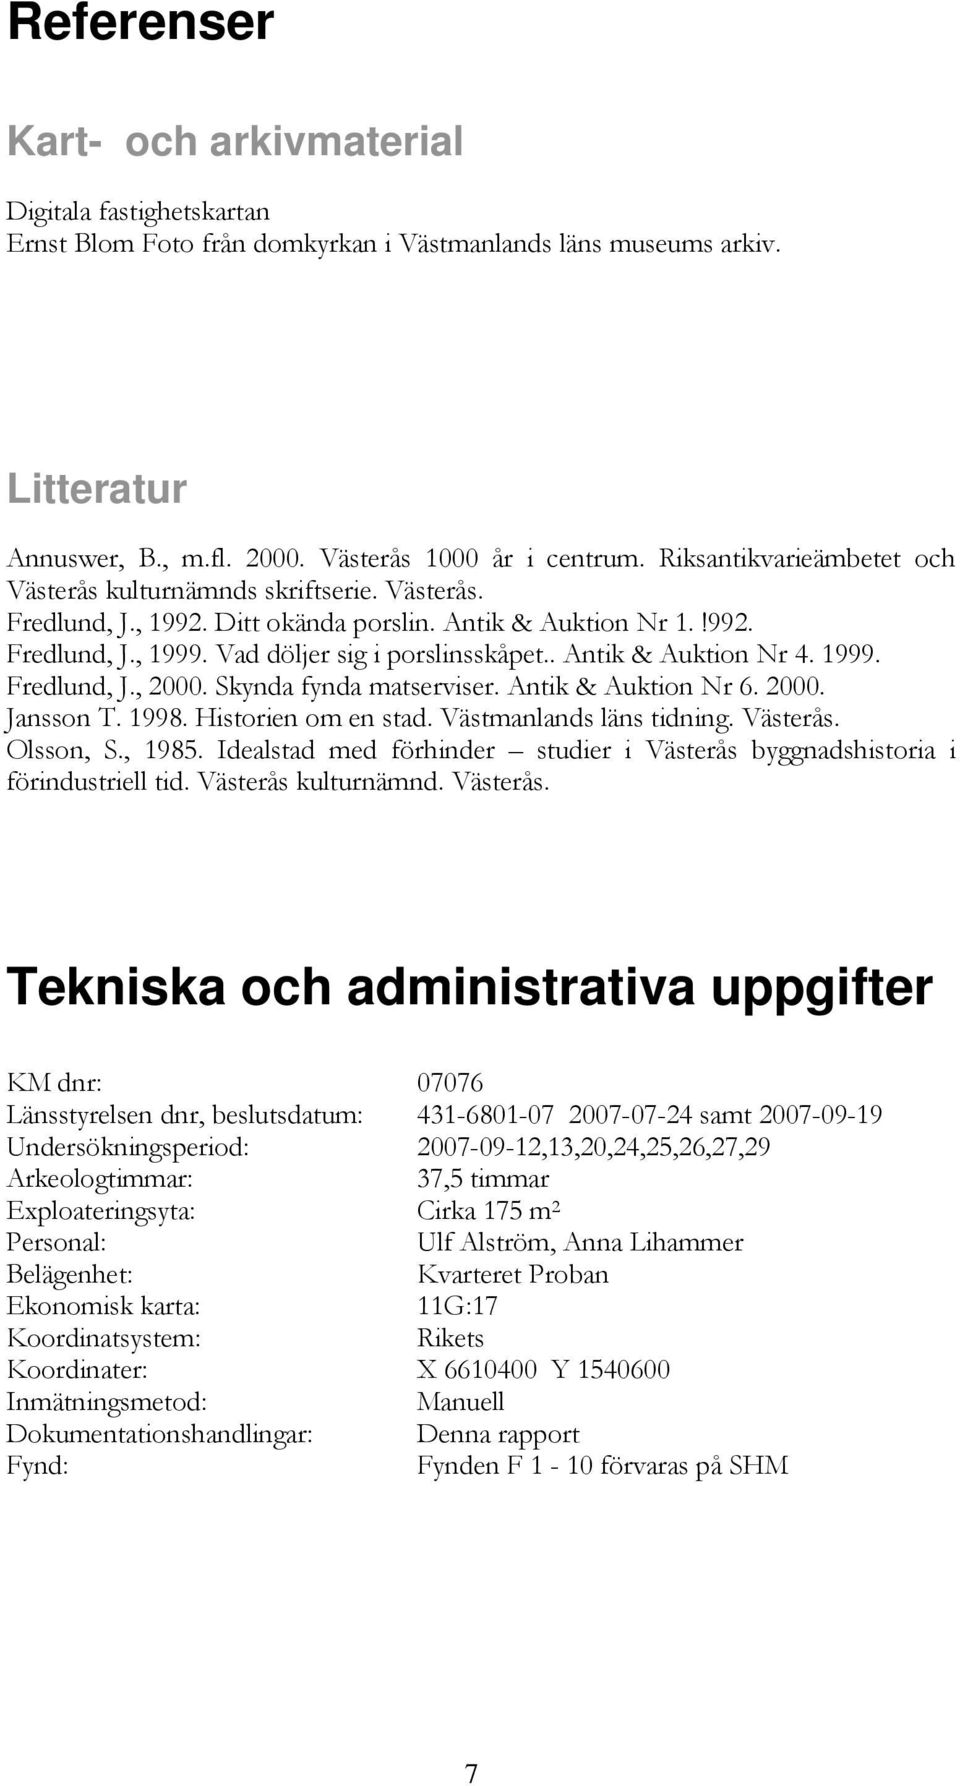 . Antik & Auktion Nr 4. 1999. Fredlund, J., 2000. Skynda fynda matserviser. Antik & Auktion Nr 6. 2000. Jansson T. 1998. Historien om en stad. Västmanlands läns tidning. Västerås. Olsson, S., 1985.